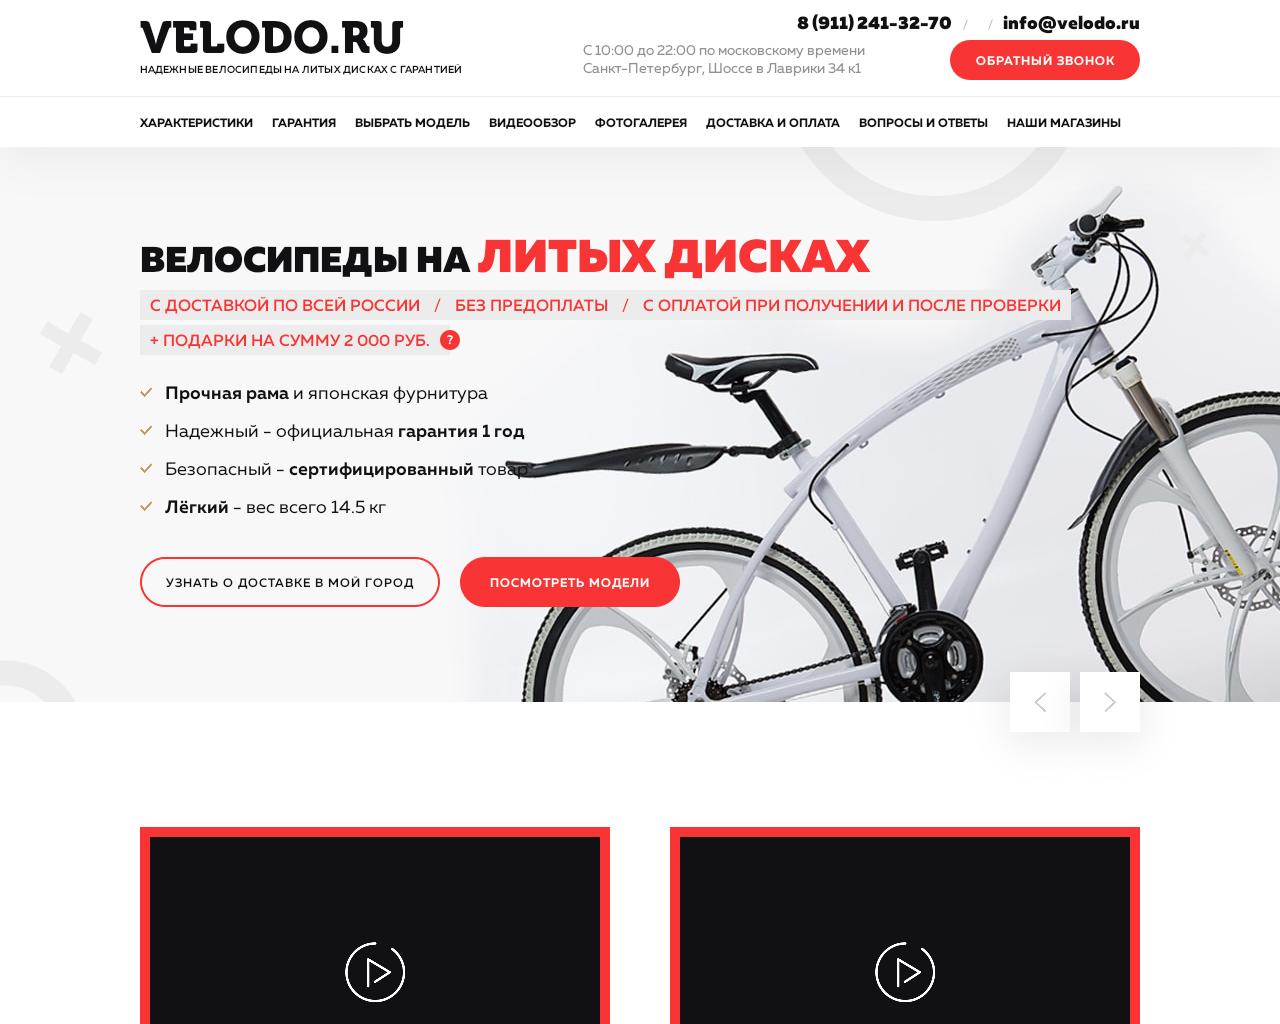 Изображение сайта velodo.ru в разрешении 1280x1024